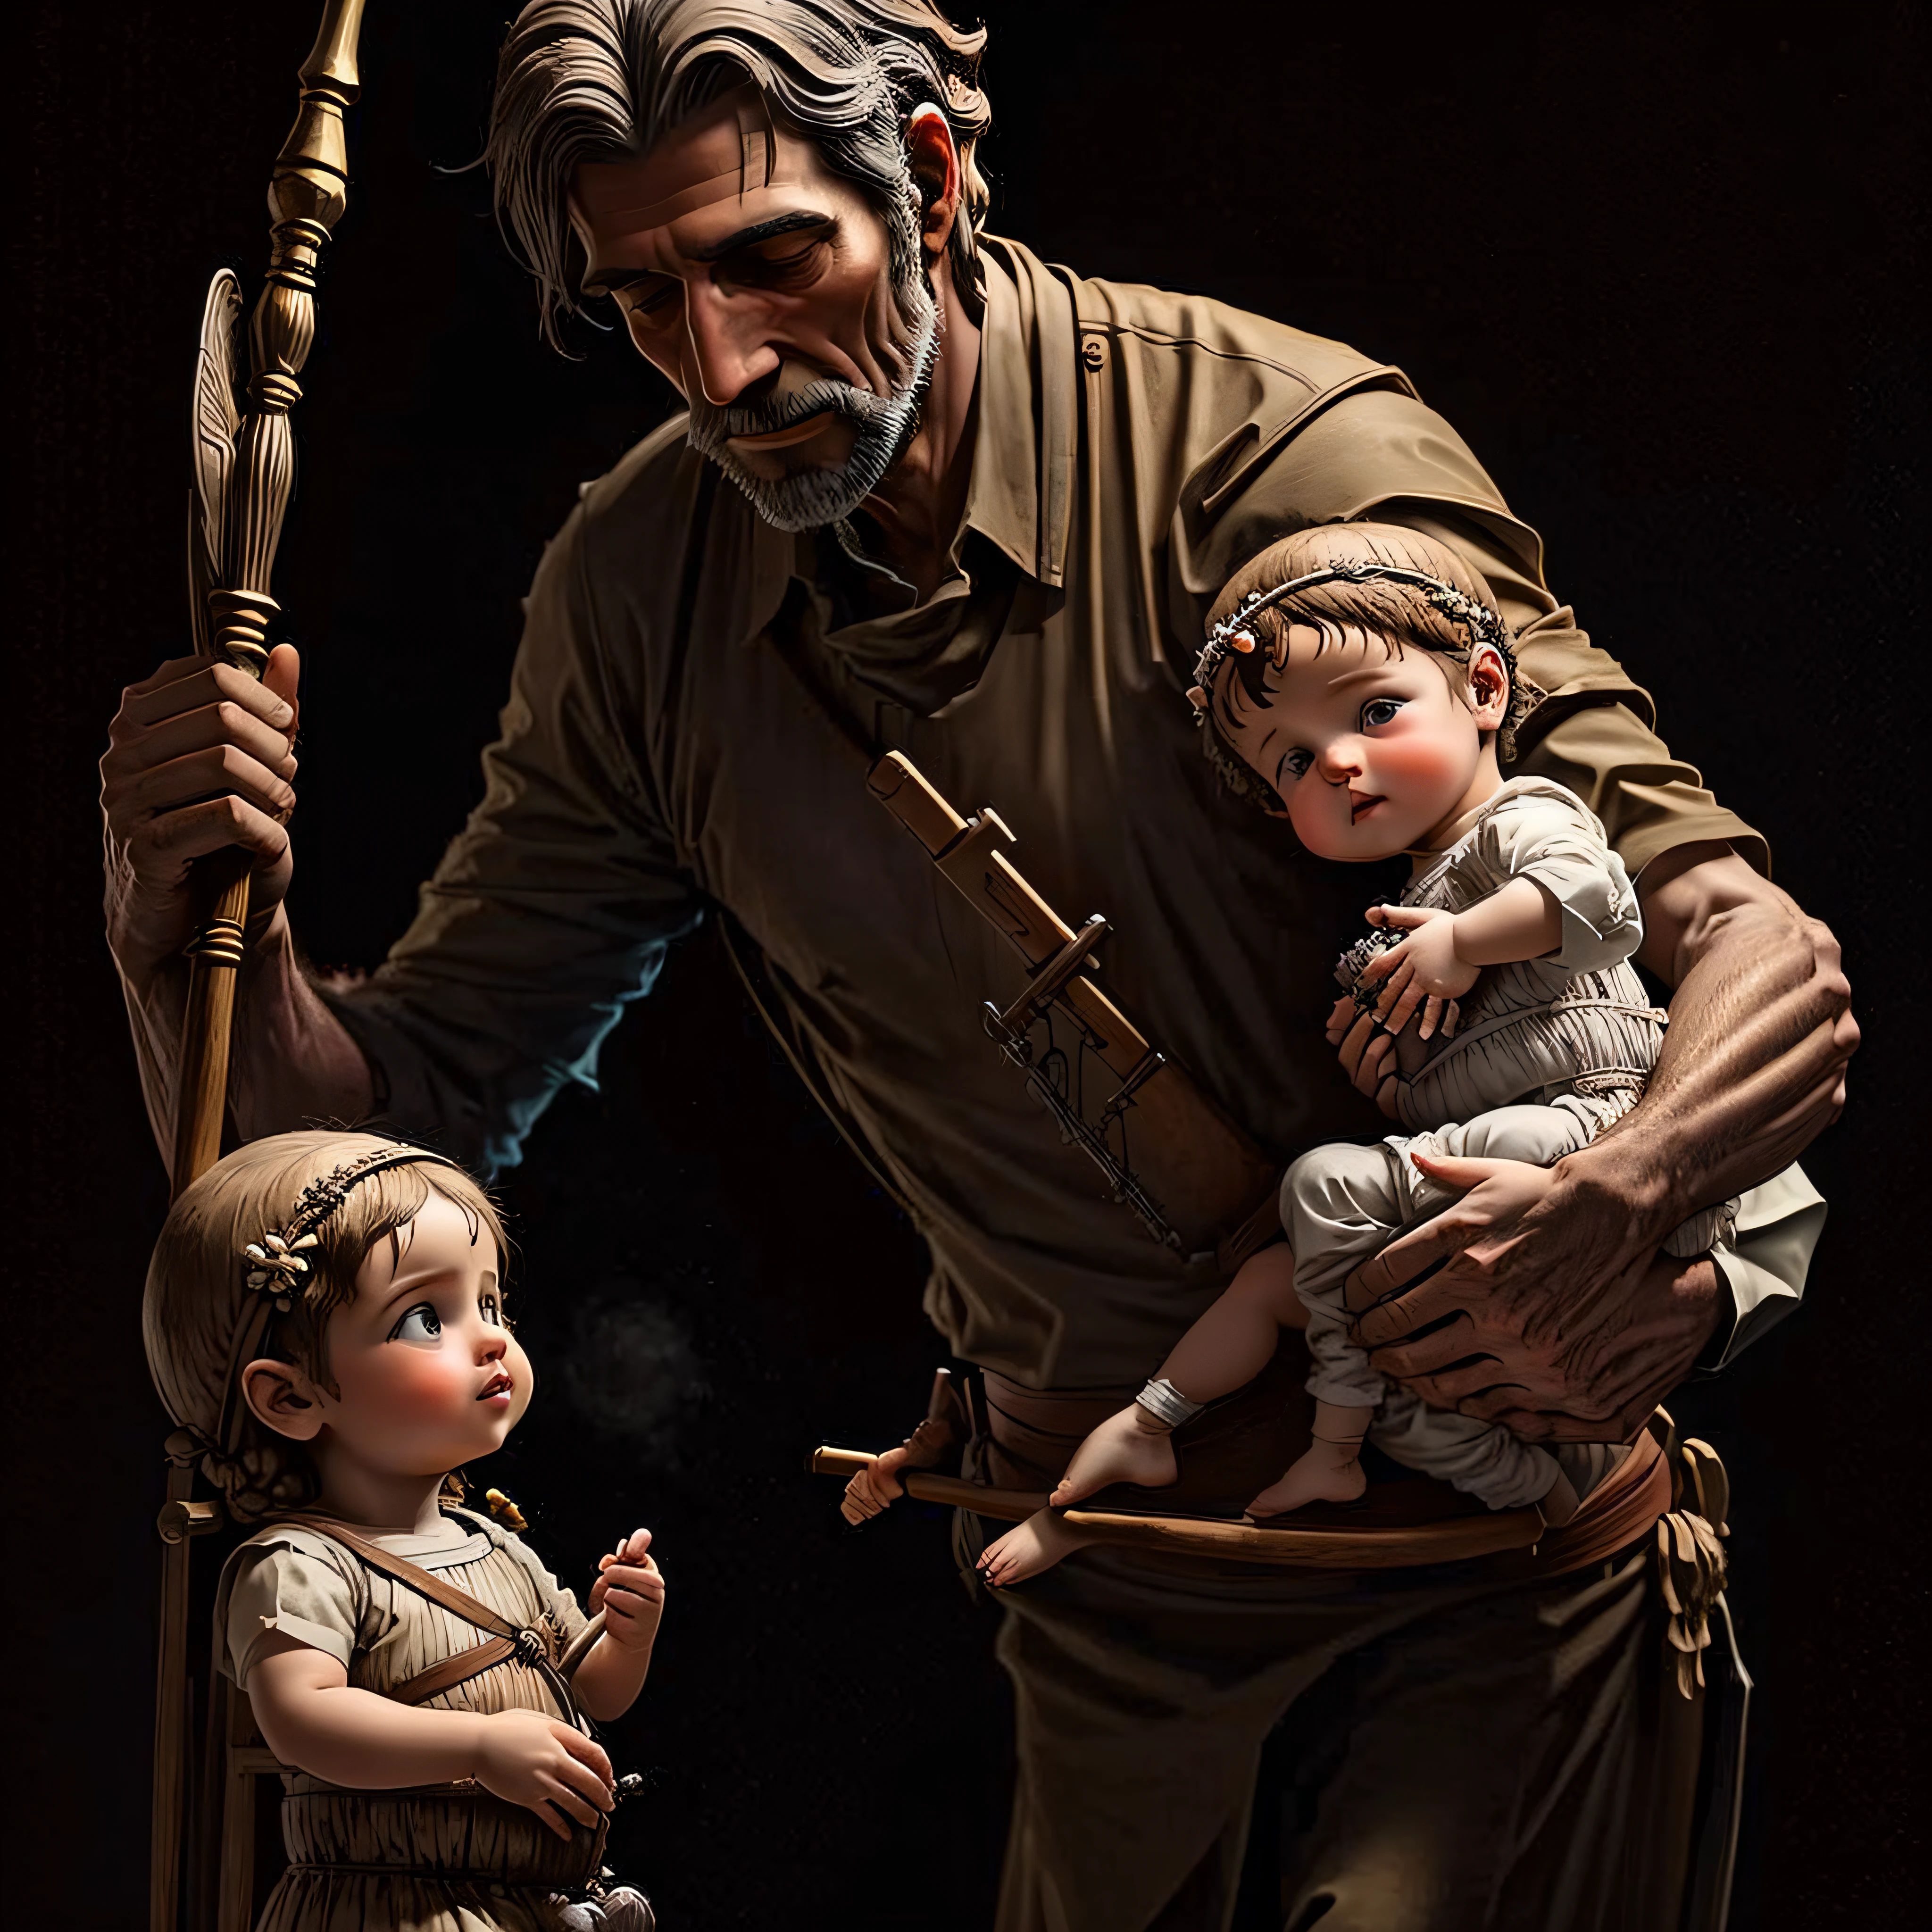 Realistisches Bild des Heiligen Josef mit einem Stab und dem Jesuskind – AR 16:9 --auto